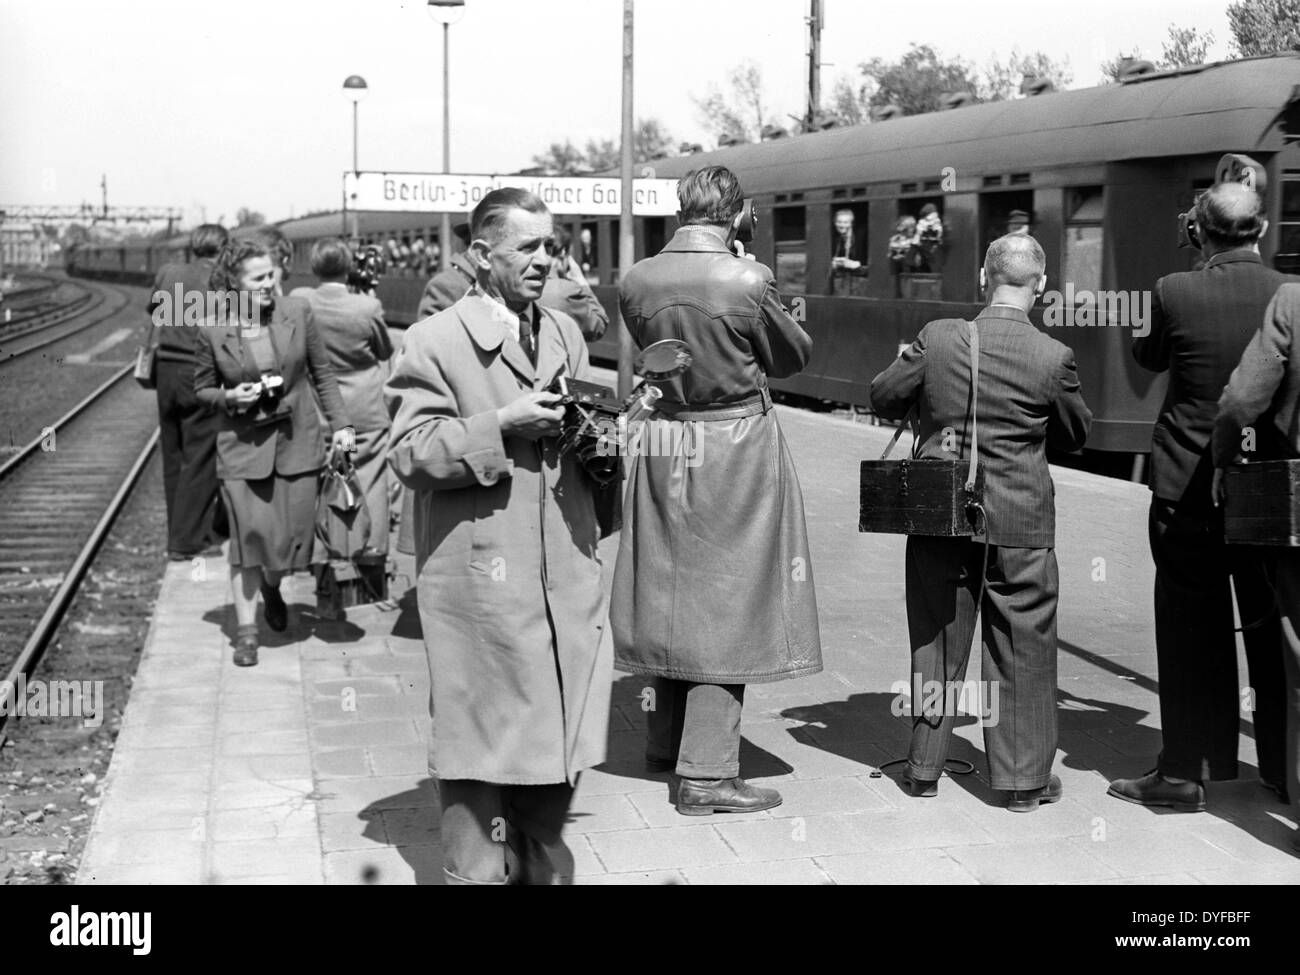 Nach der Aufhebung der Berlin-Blockade am 12. Mai 1949, aufzeichnen Fotografen und Kameraleute die Abfahrt des ersten Interzonenturnier Zuges FD 112 nach Köln und Berlin Zoologischer Garten Bahnhof, am selben Tag. Stockfoto